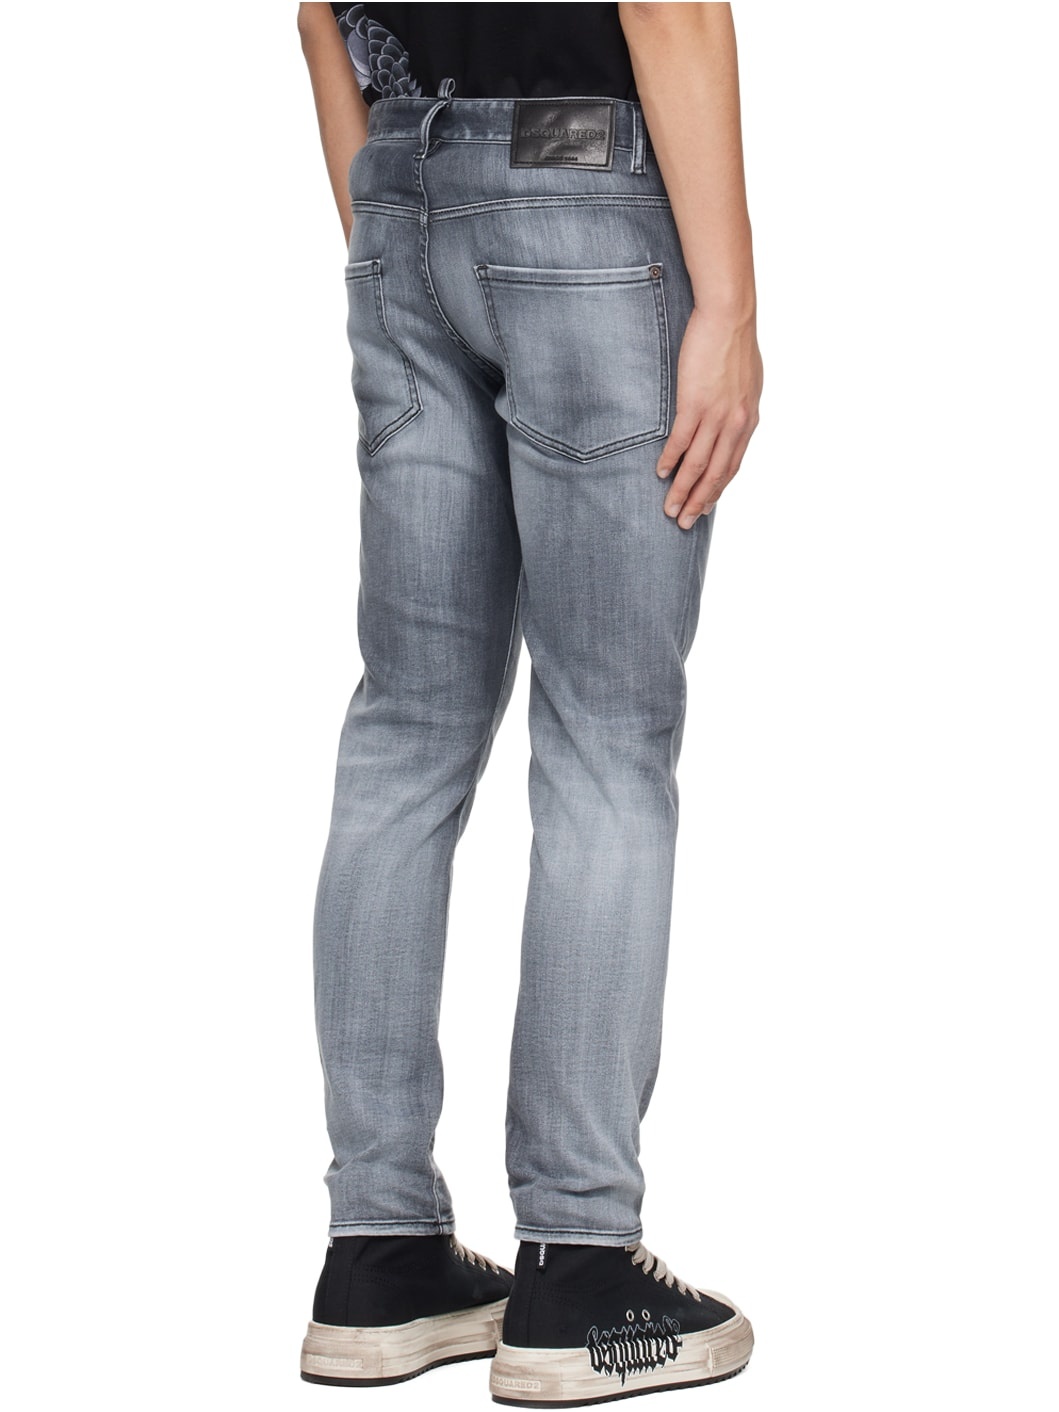 Gray Skater Jeans - 3